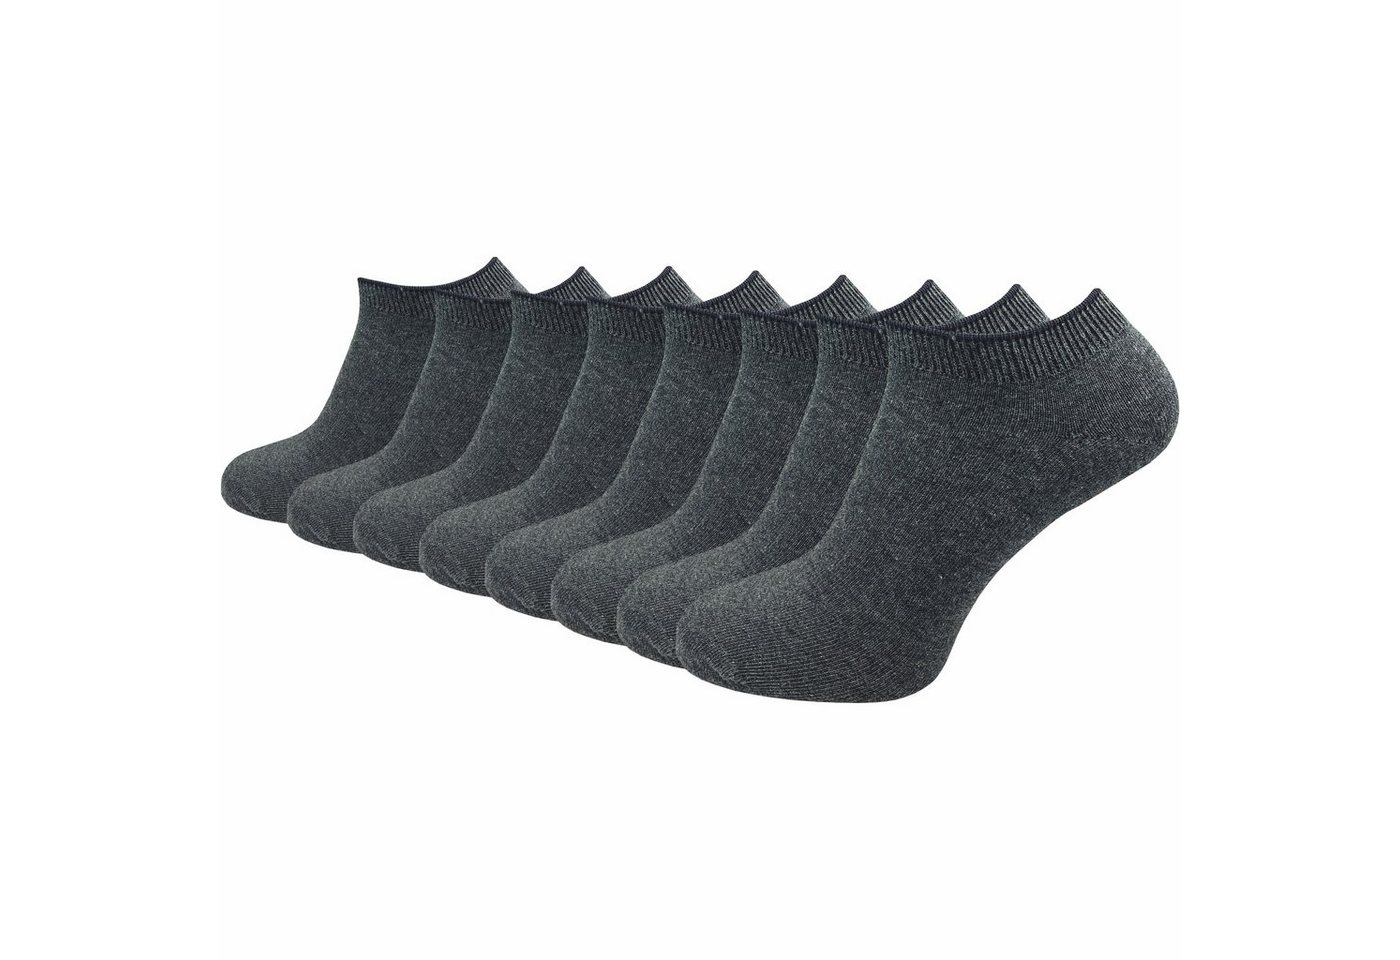 GAWILO Sneakersocken "Natur" für Damen & Herren aus 100% Baumwolle u.a. in weiß & schwarz (8 Paar) ohne drückende Naht über den Zehen - Spitze handgekettelt von GAWILO